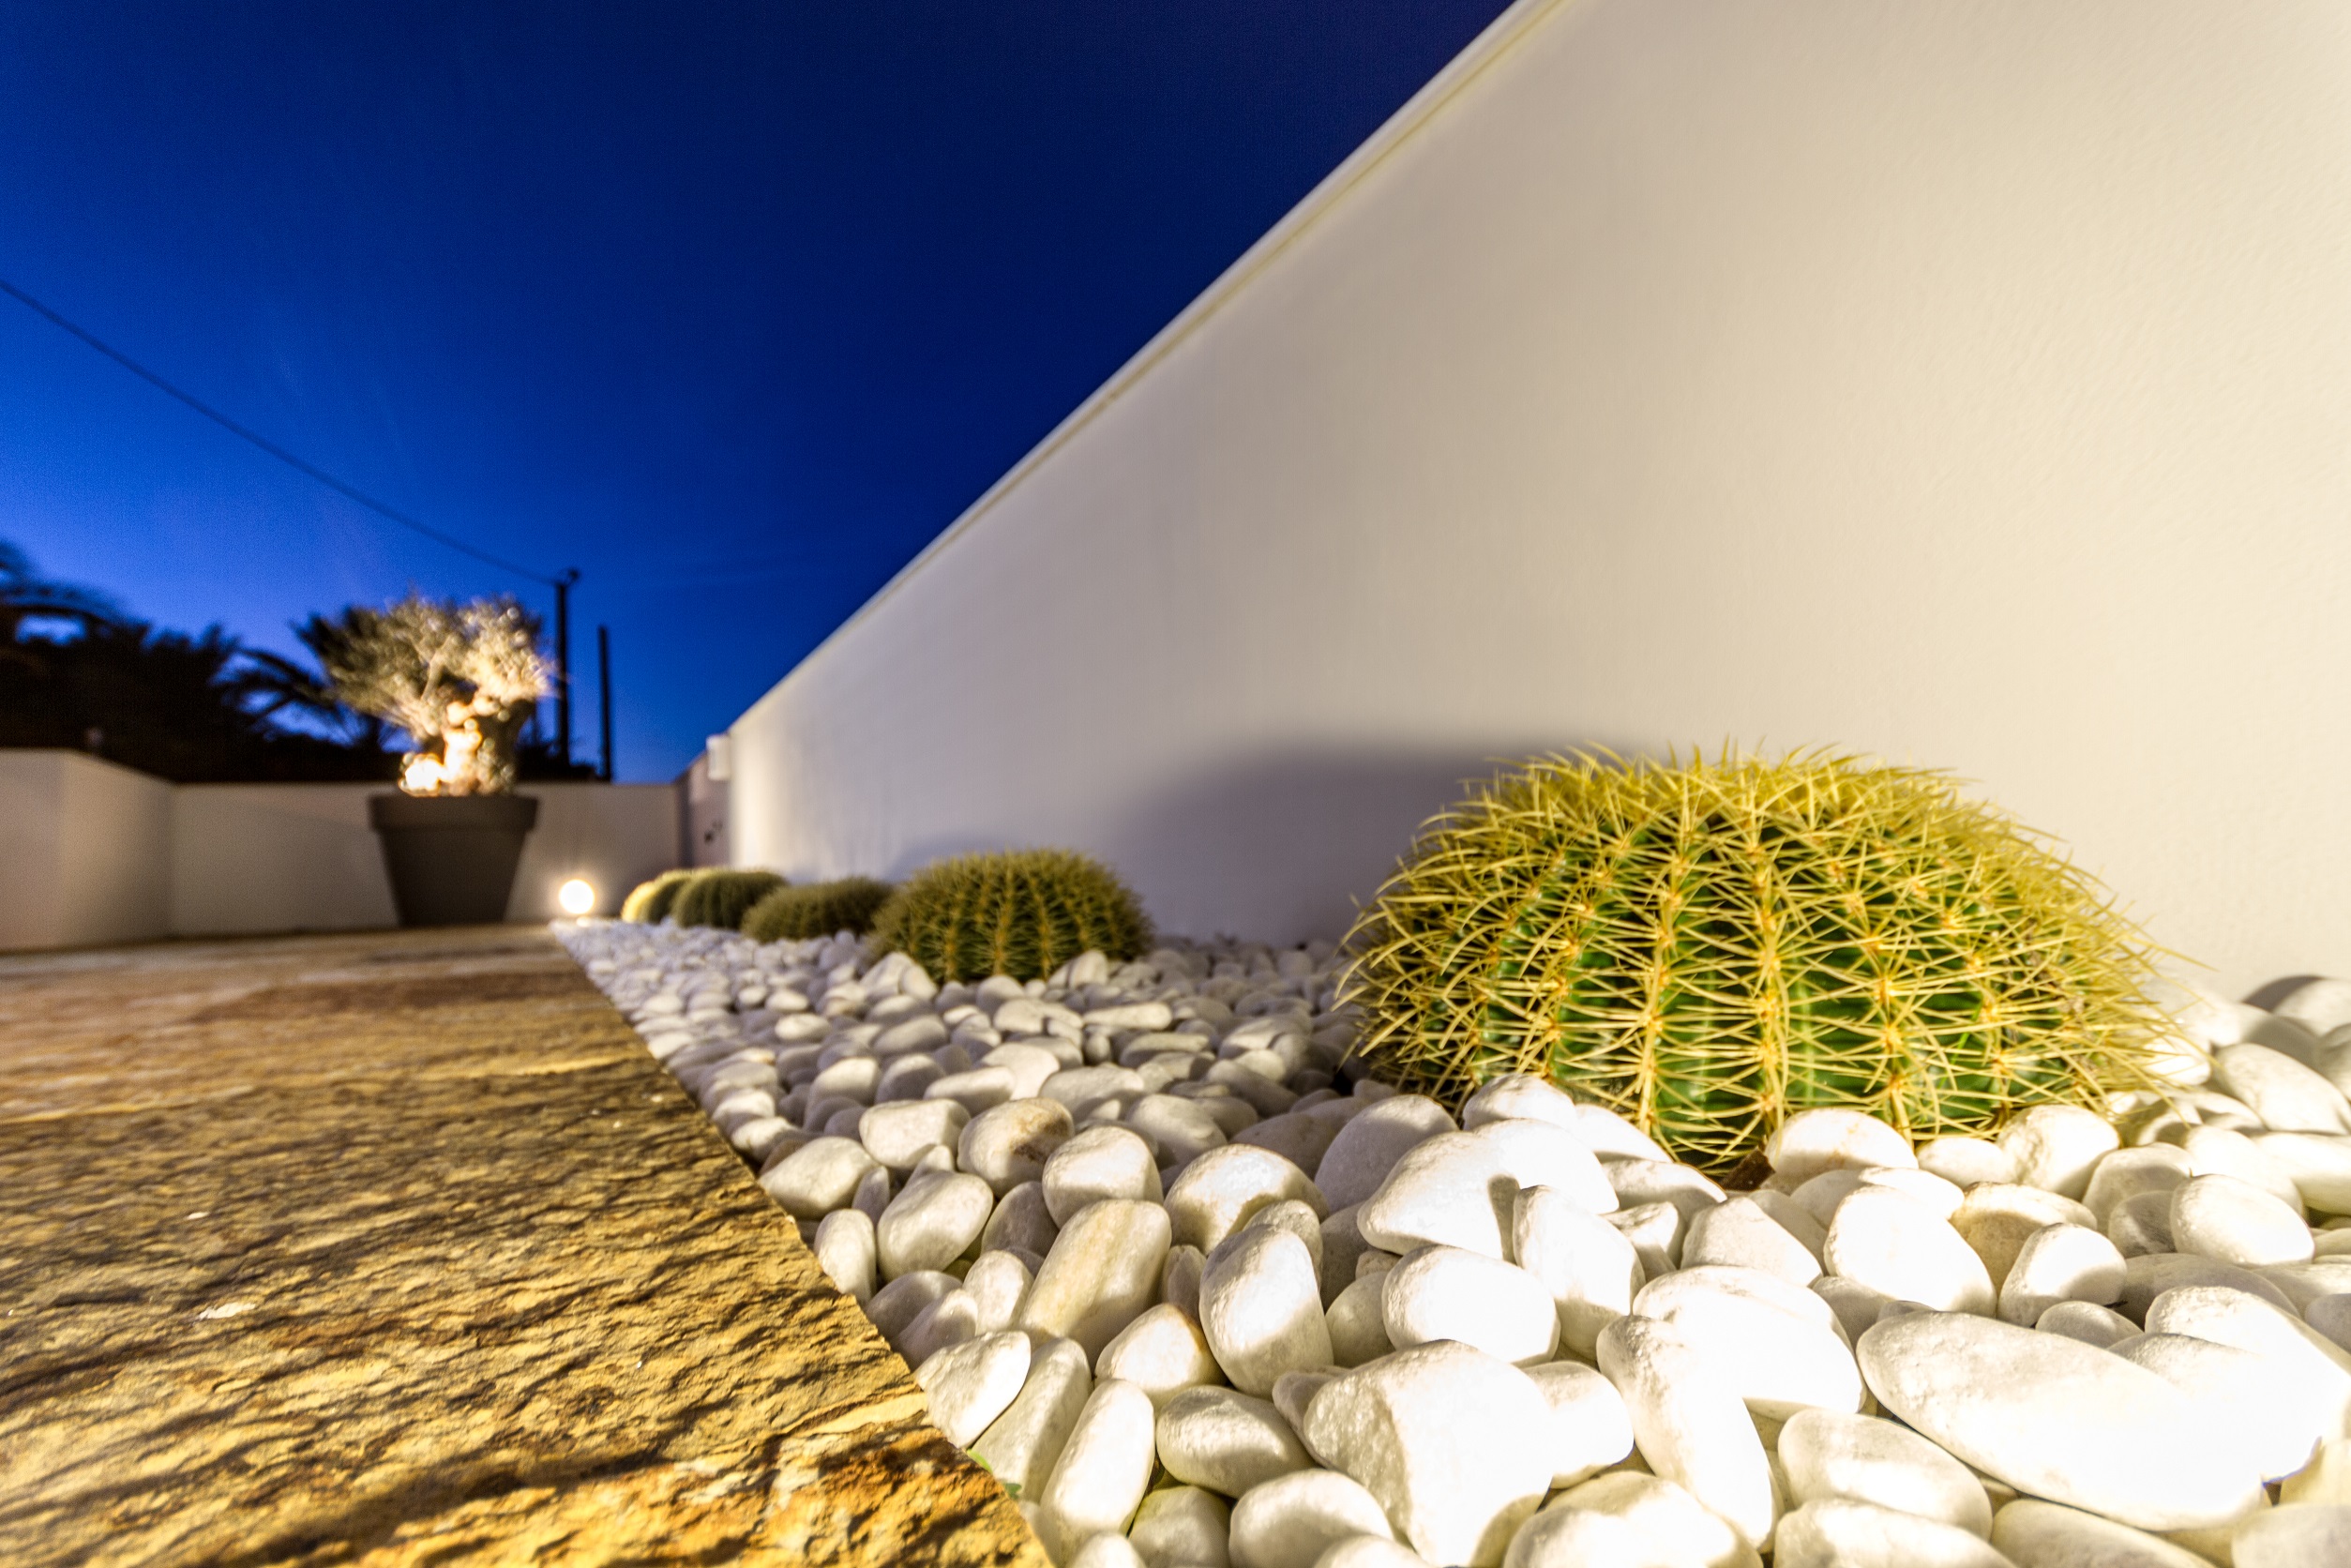 Denia. 1.linea de la playa. Villa moderna con fantásticas vistas al mar en venta